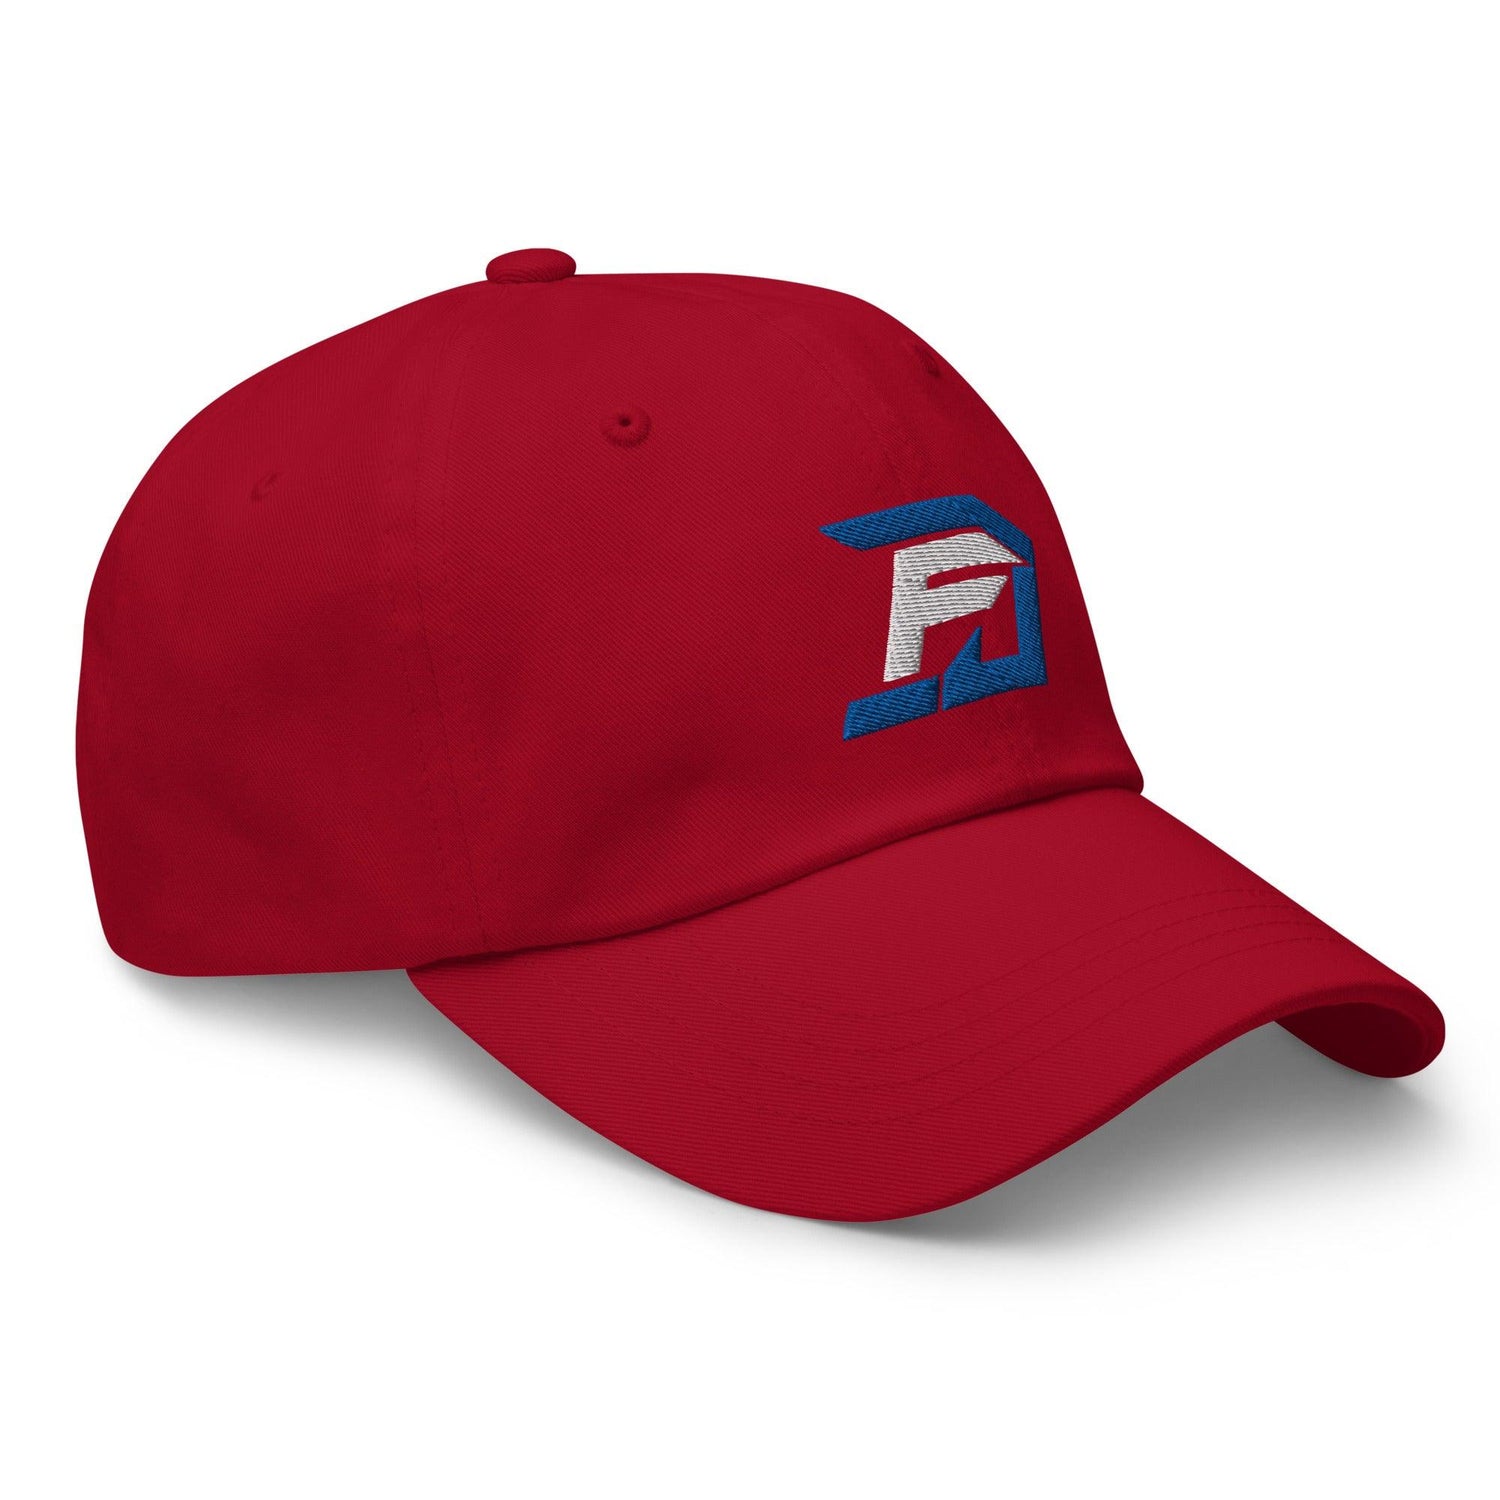 DJ Flippin "Elite" hat - Fan Arch